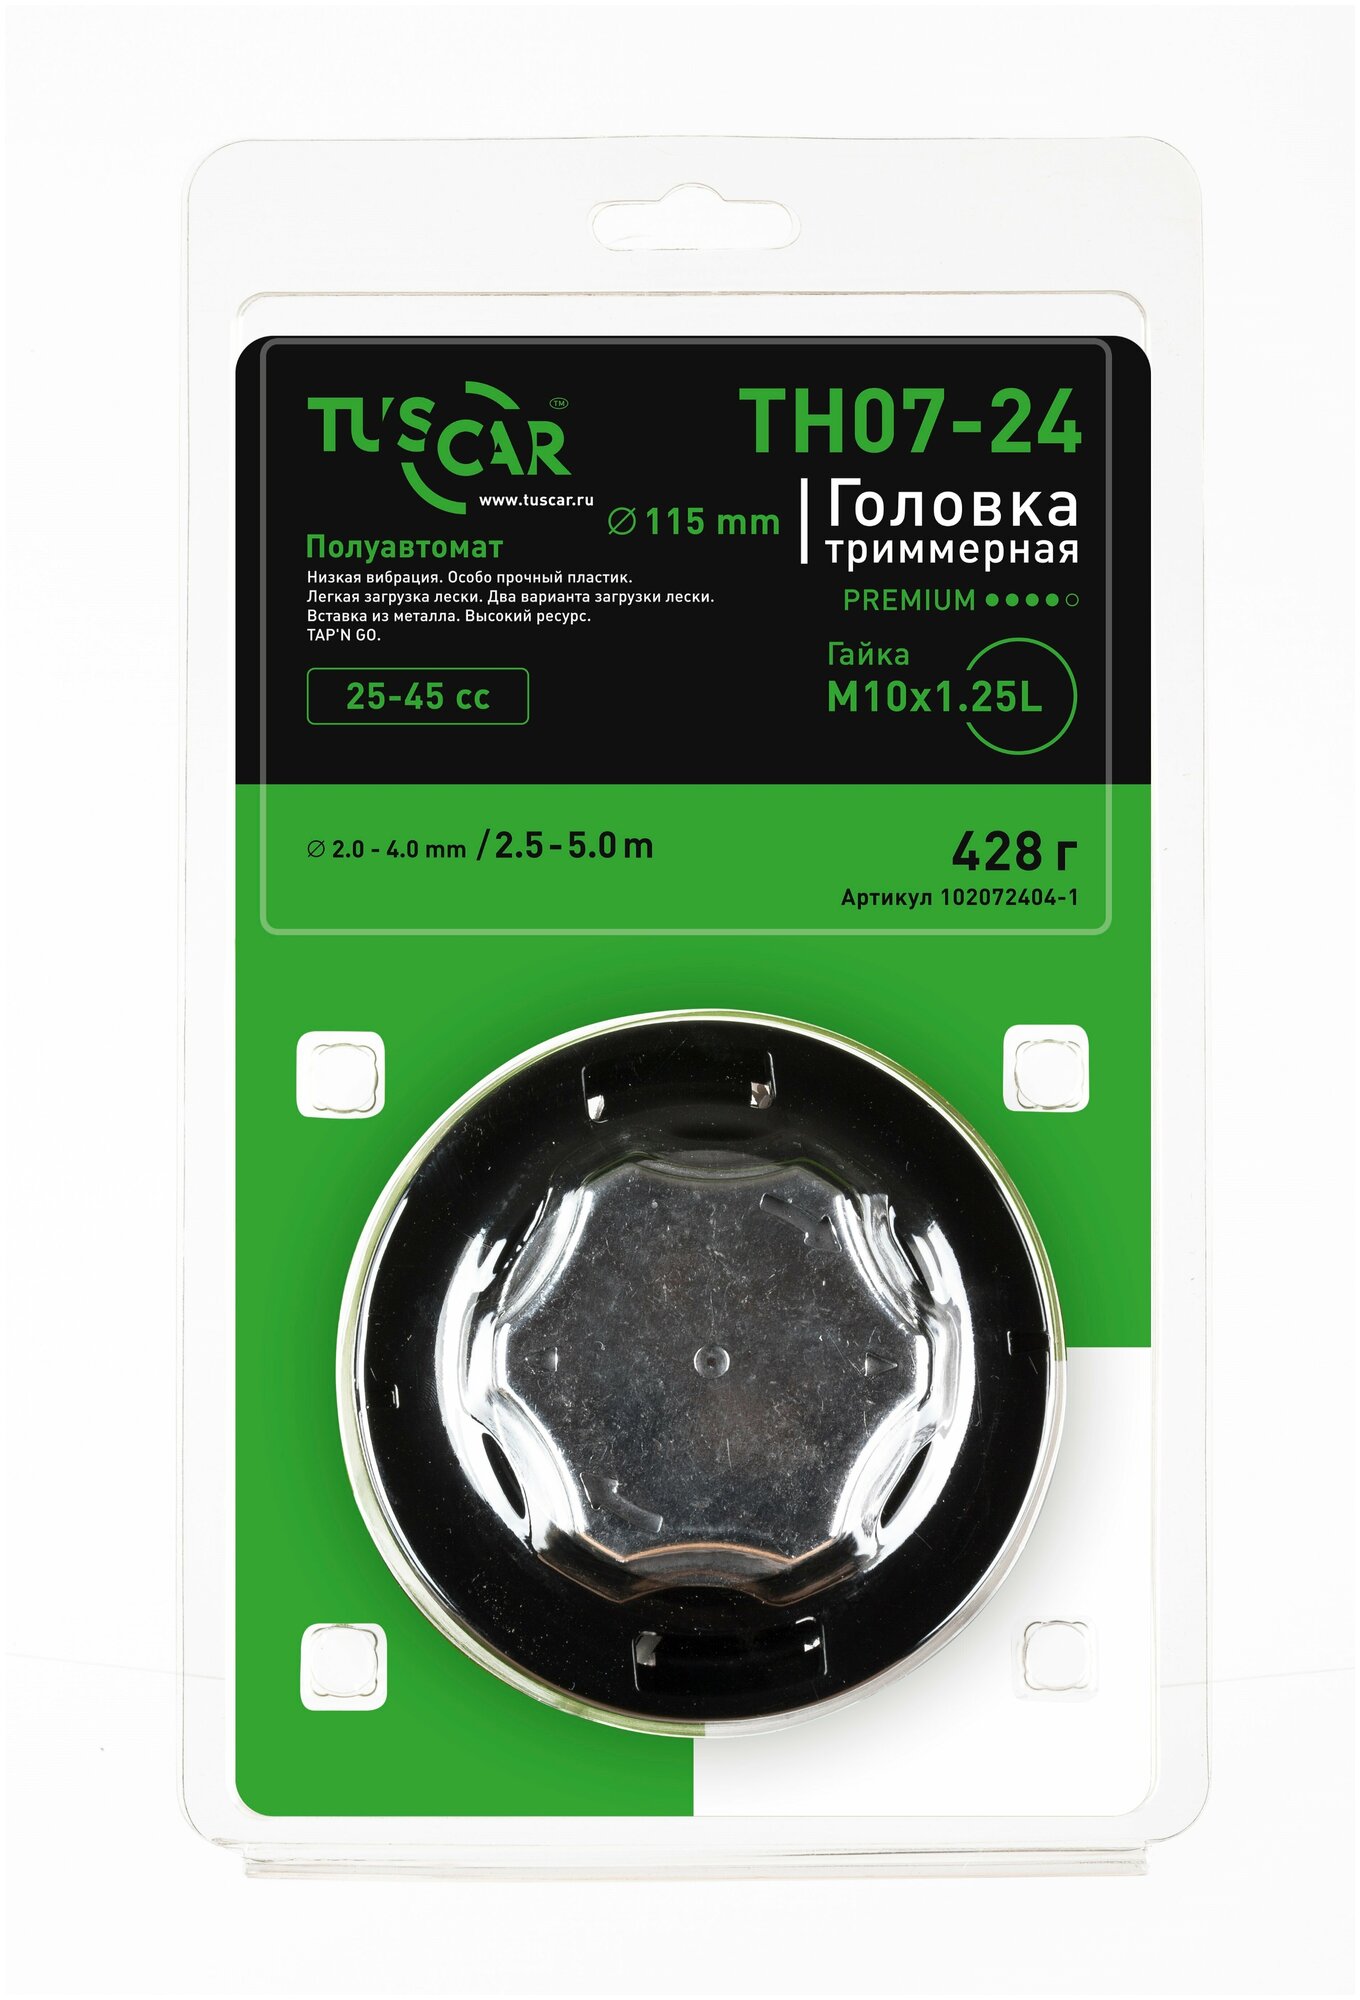 Головка триммерная TUSCAR TH07-24, гайка M10*1,25L, Premium, 102072404-1